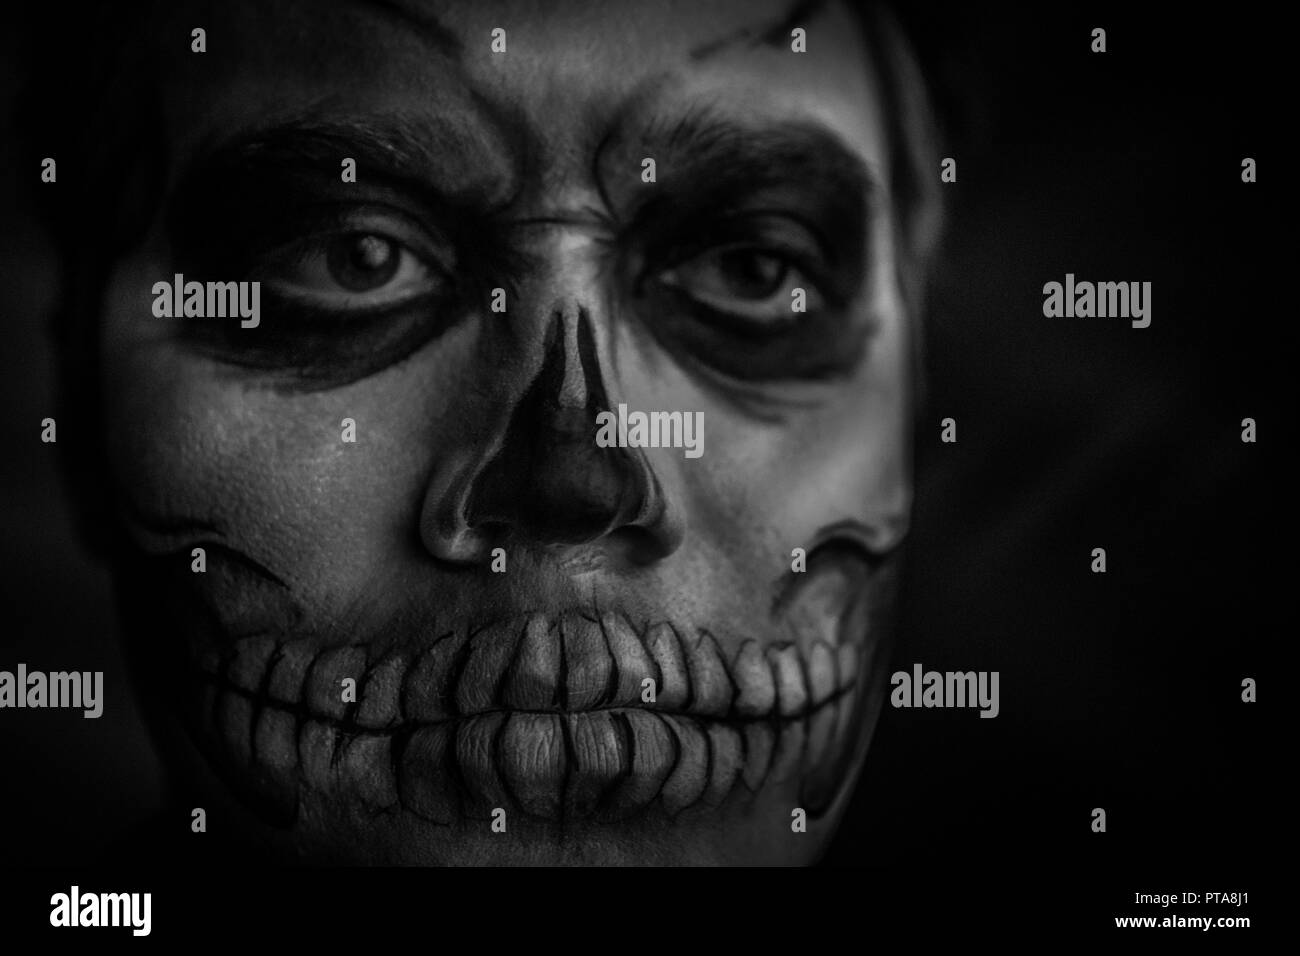 Close-up portrait of a man with a dead man's face à l'halloween. photo en noir et blanc Banque D'Images